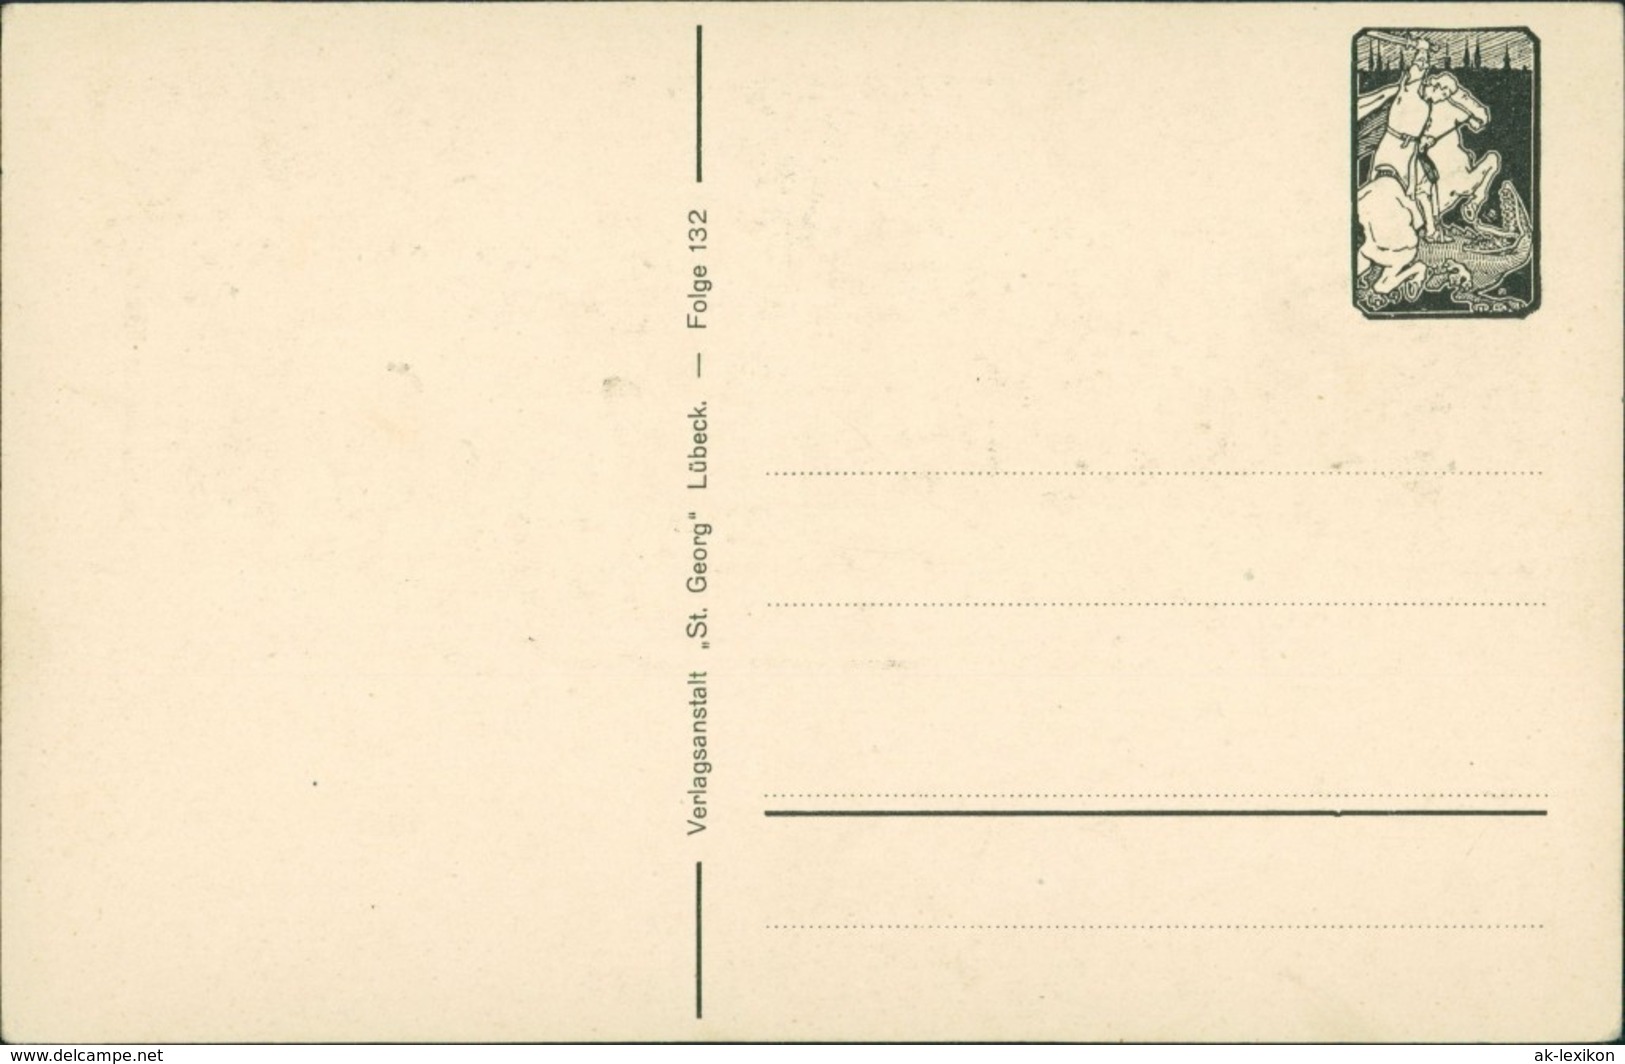  Scherenschnitt/Schattenschnitt-Ansichtskarten Künstlerkarte September 1922 - Silhouettes